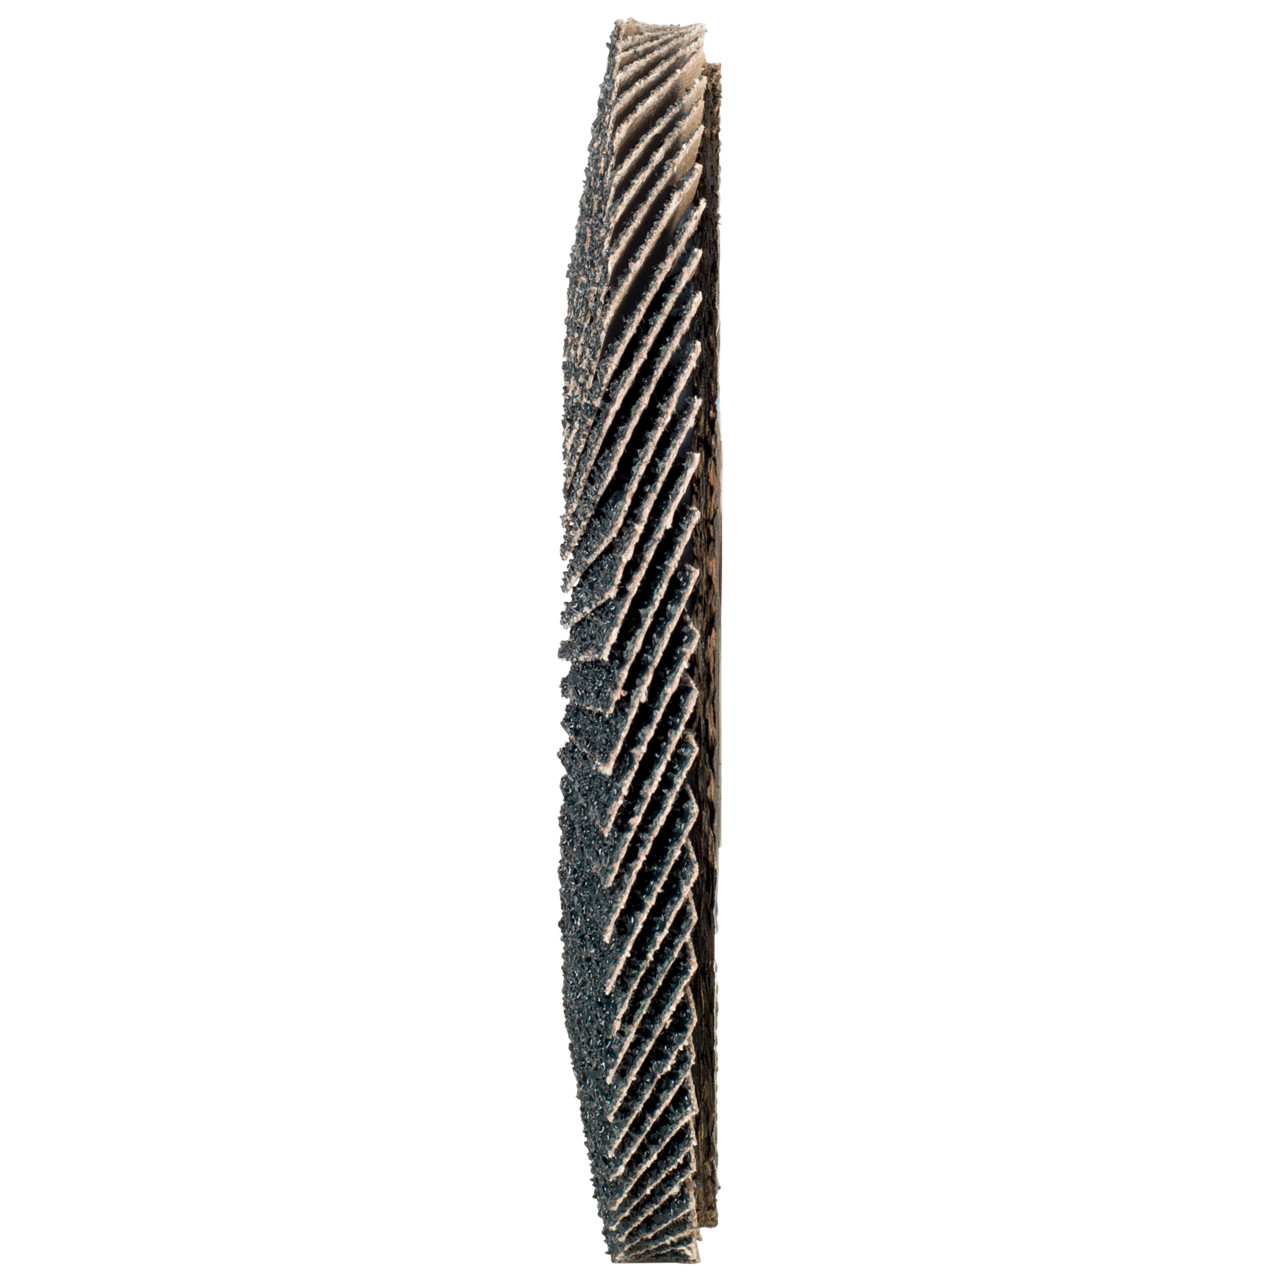 Tyrolit Arandela dentada DxH 125x22,2 2en1 para acero y acero inoxidable, P40, forma: 28A - versión recta (versión con cuerpo de soporte de fibra de vidrio), Art. 668692